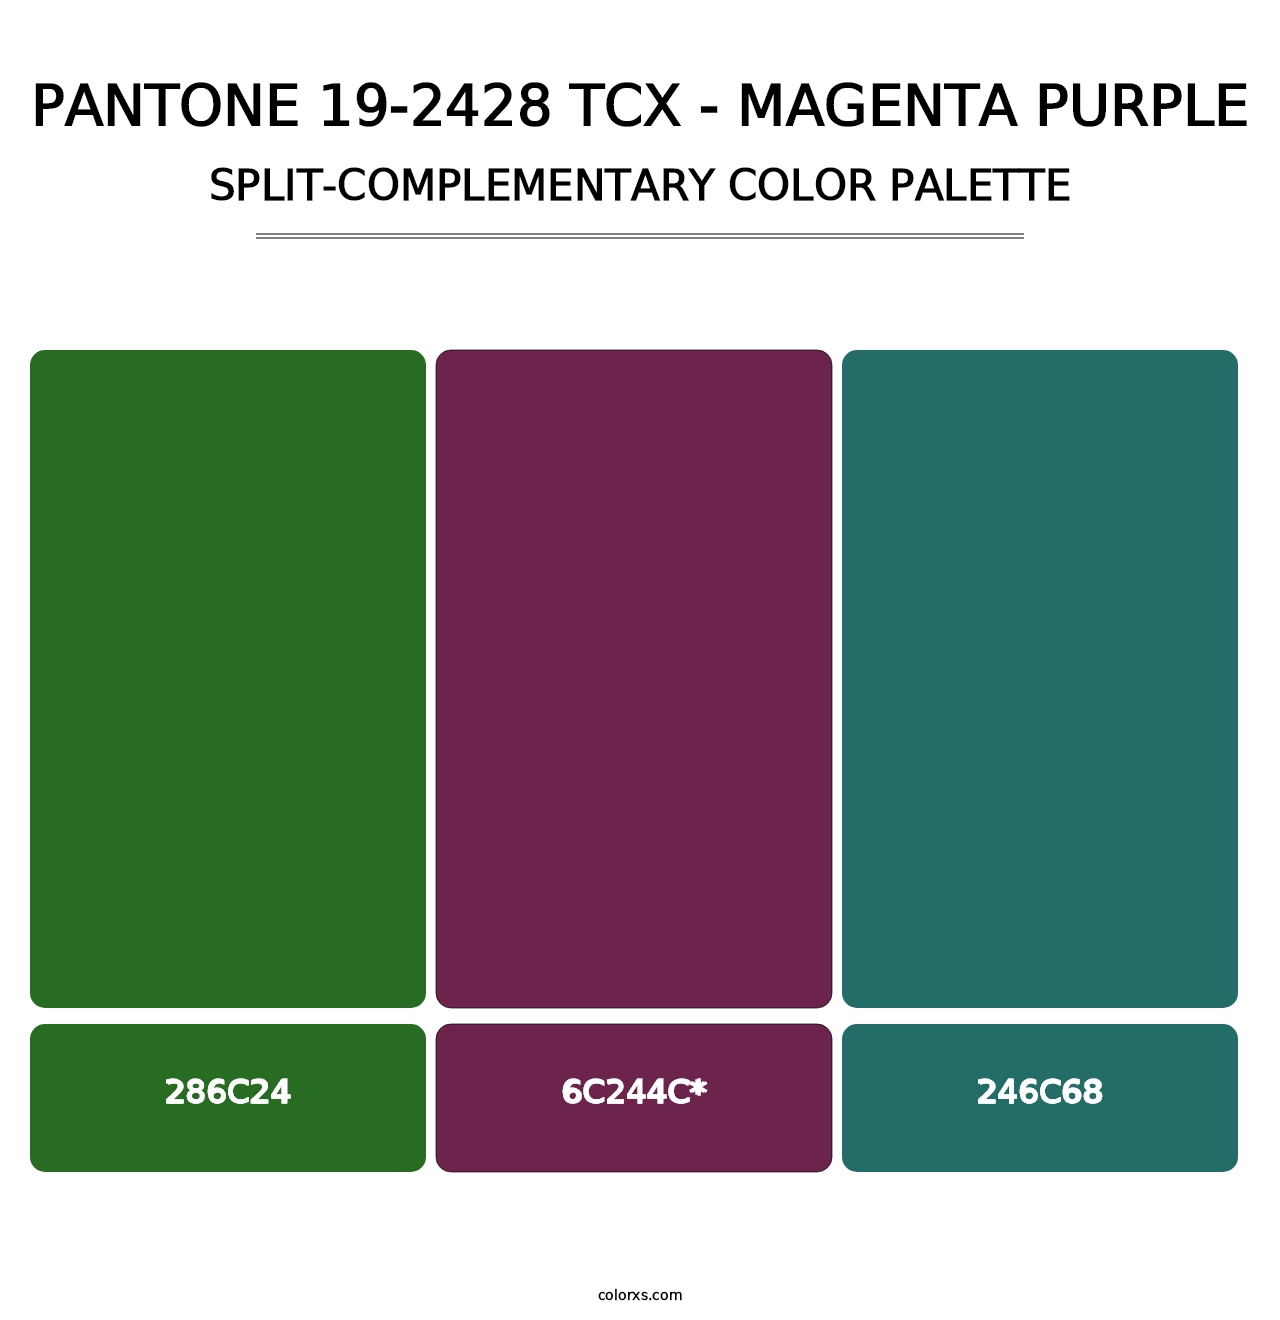 PANTONE 19-2428 TCX - Magenta Purple - Split-Complementary Color Palette